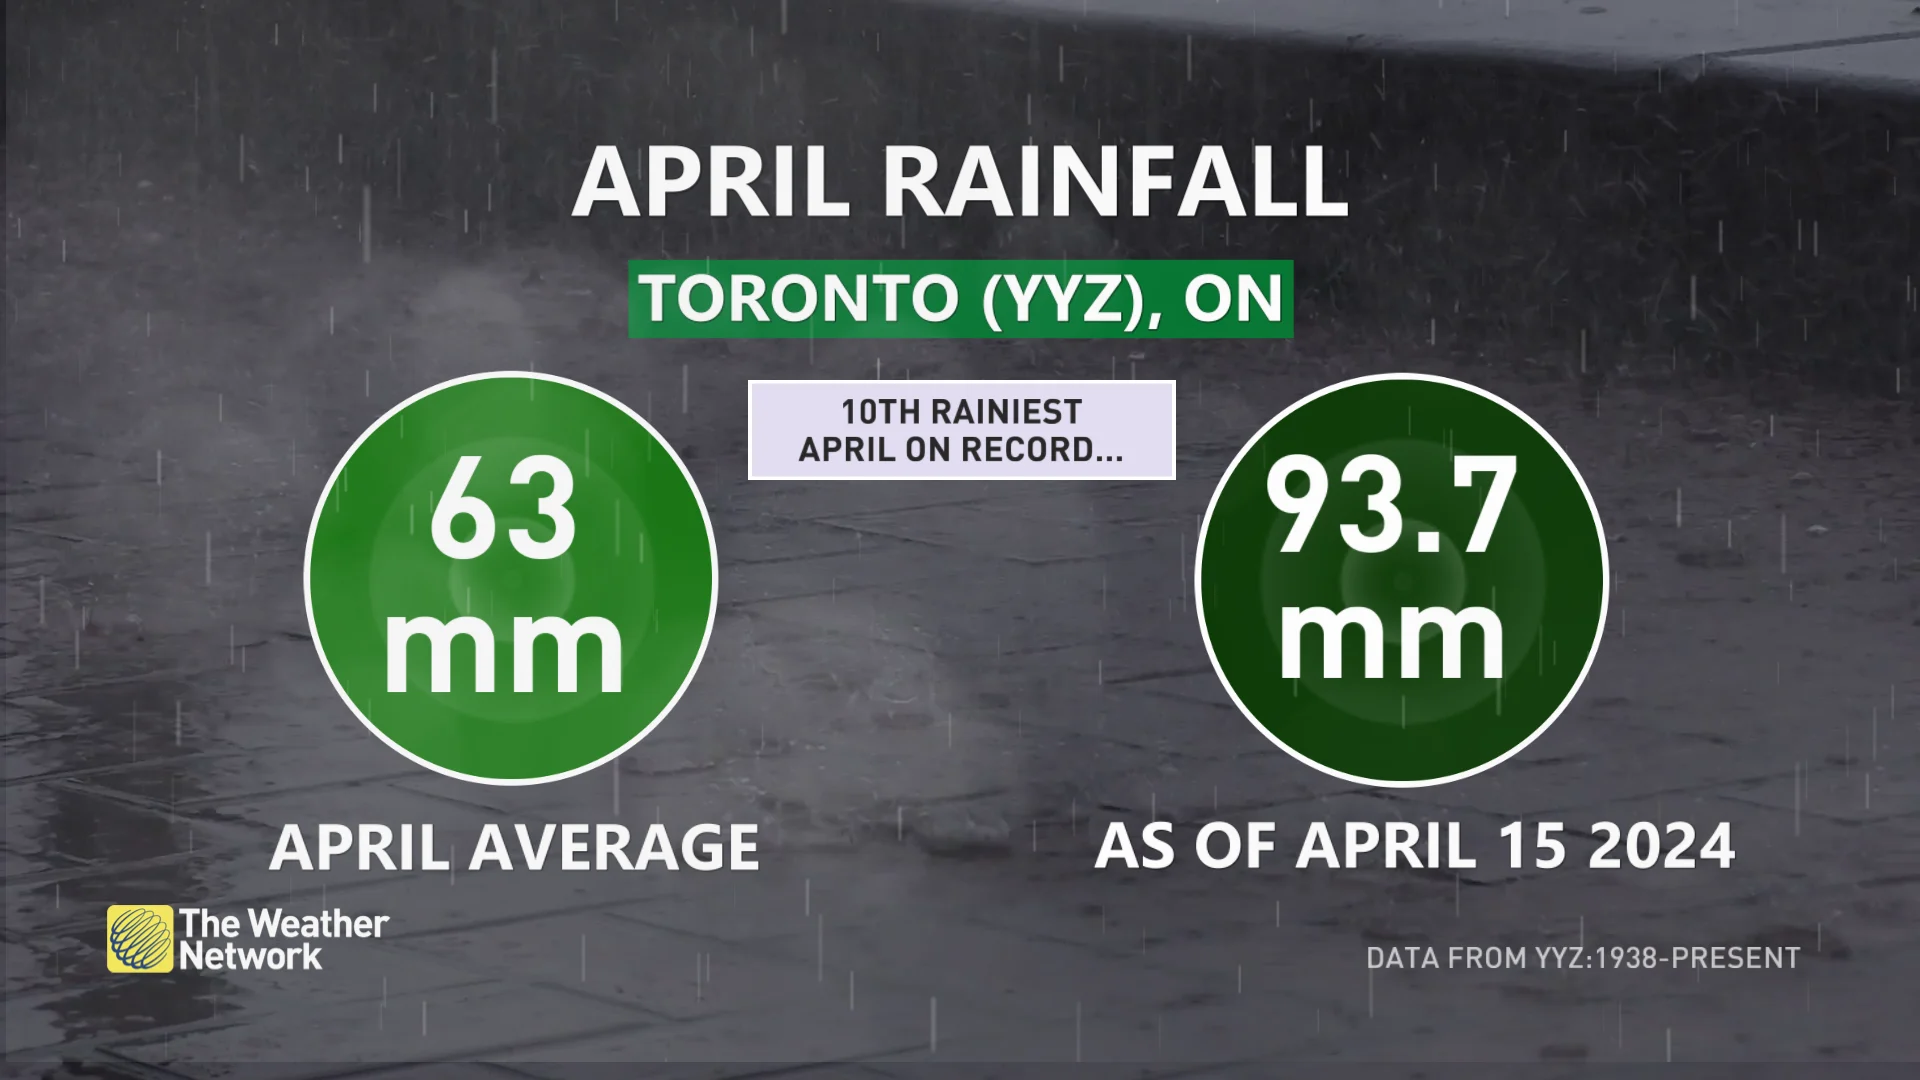 Toronto April rainfall totals _April 15